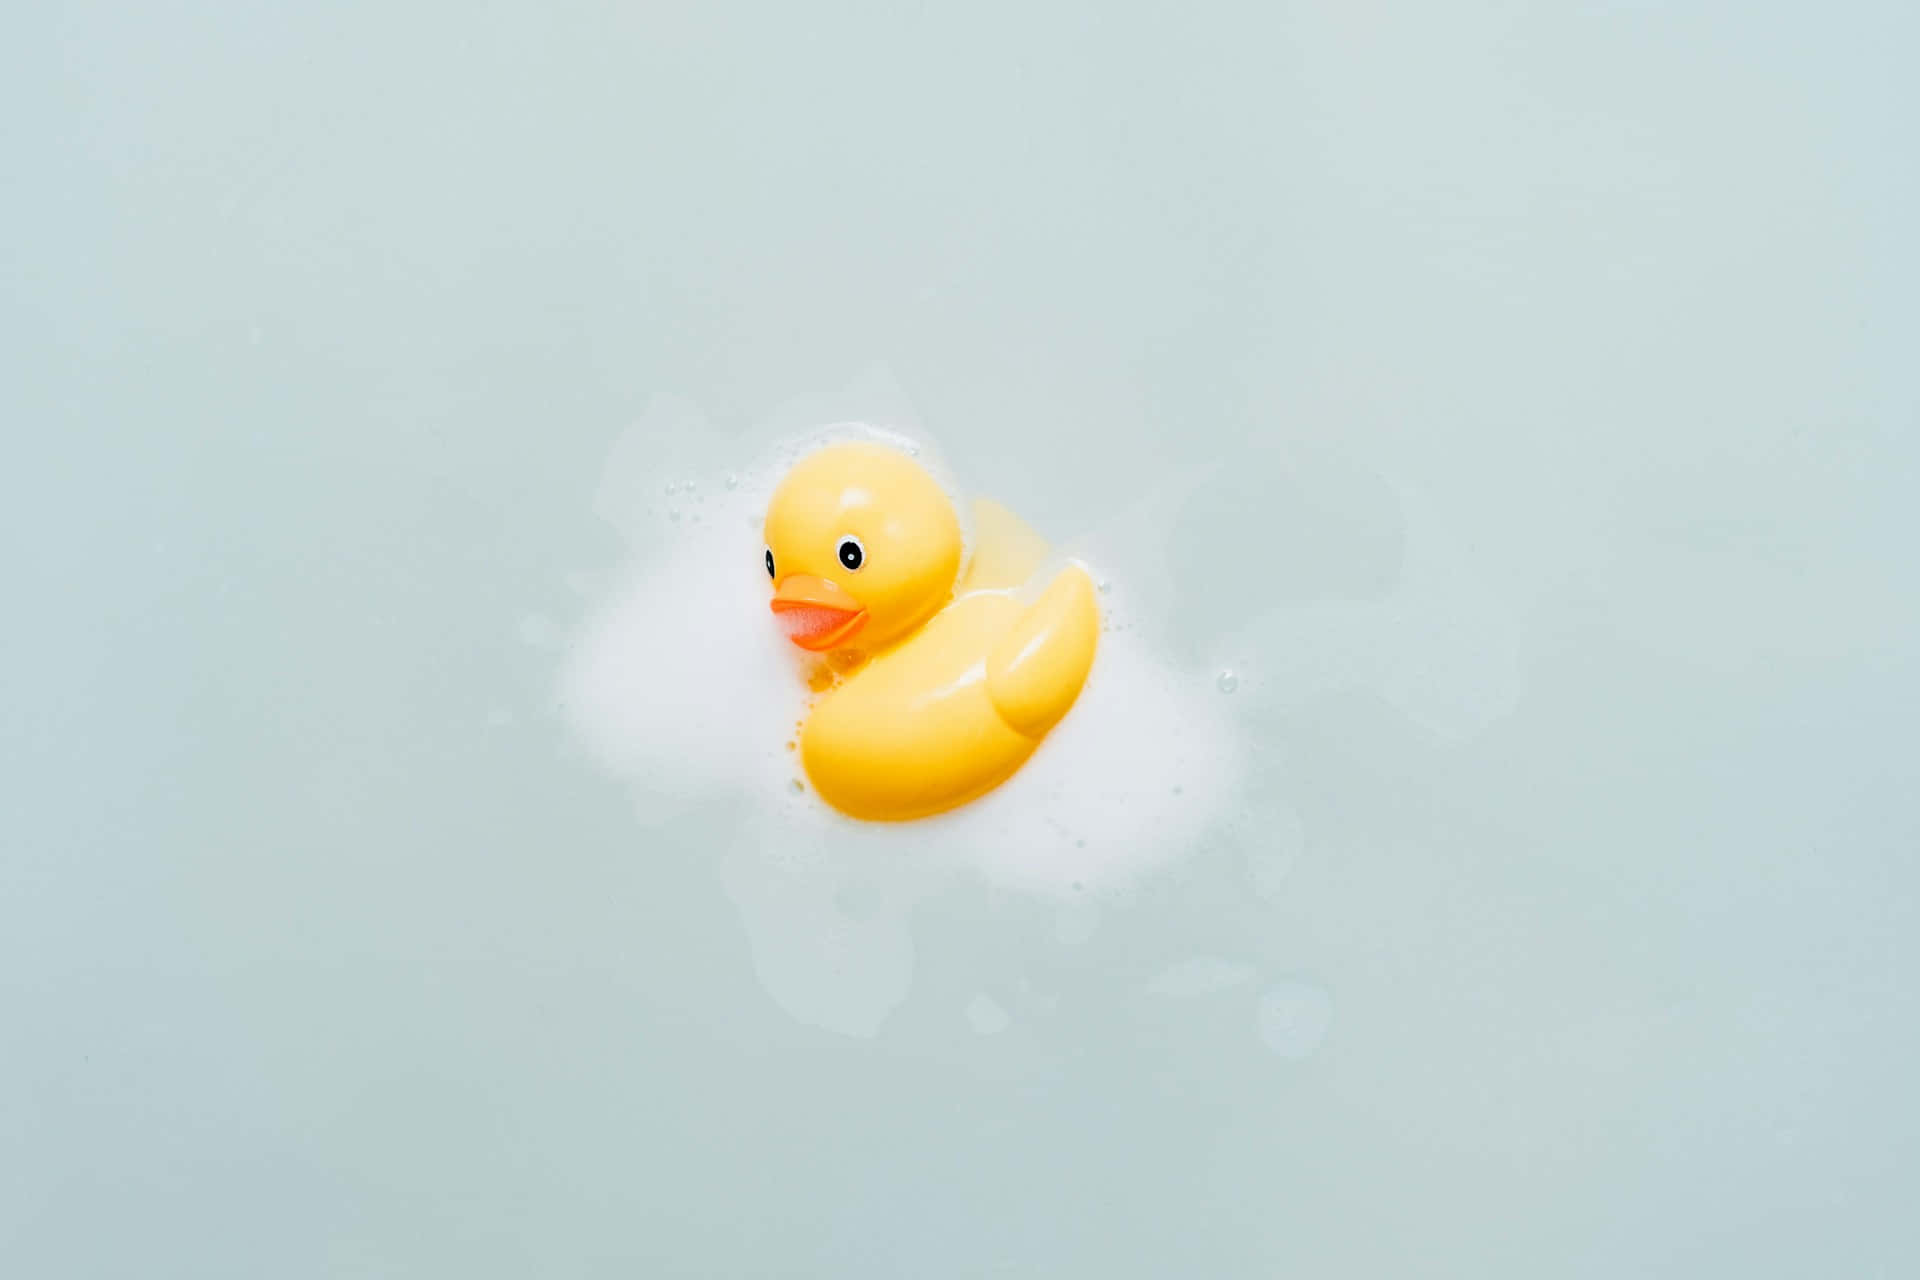 Rubber Duck Floatingin Water.jpg Wallpaper